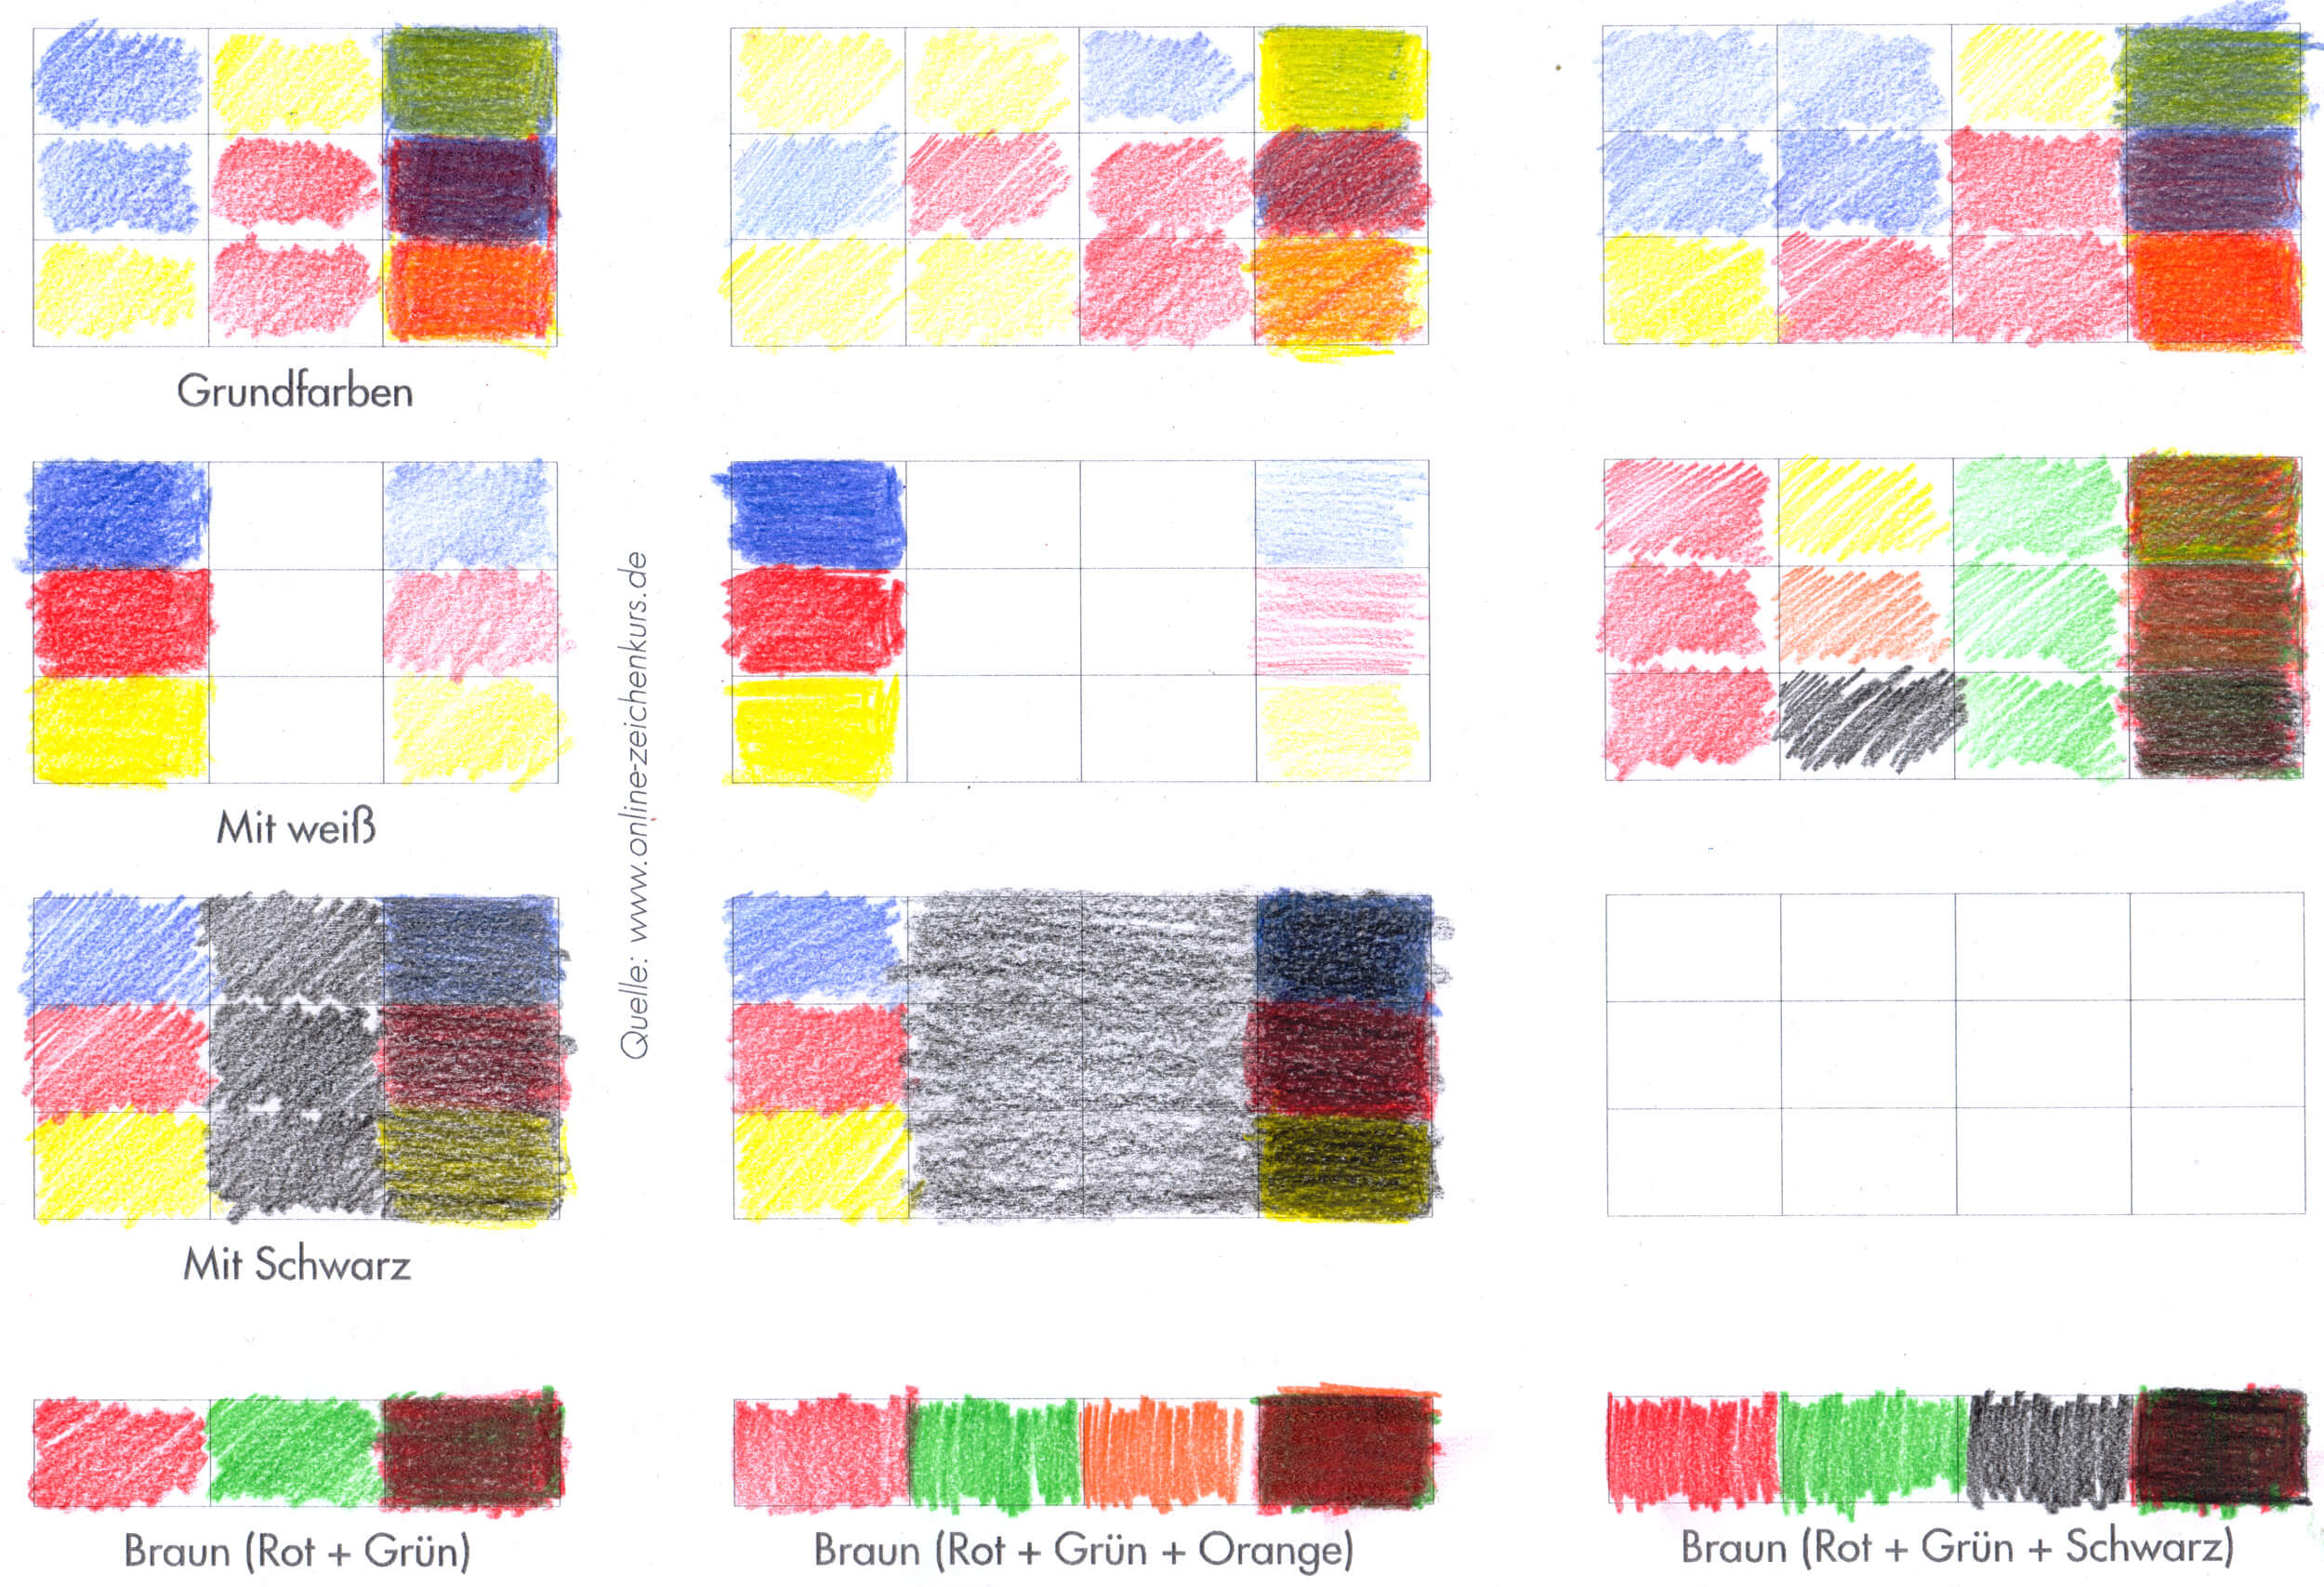 Buntstifttechnik Farben mischen - Viele Farben in wenig Stiften